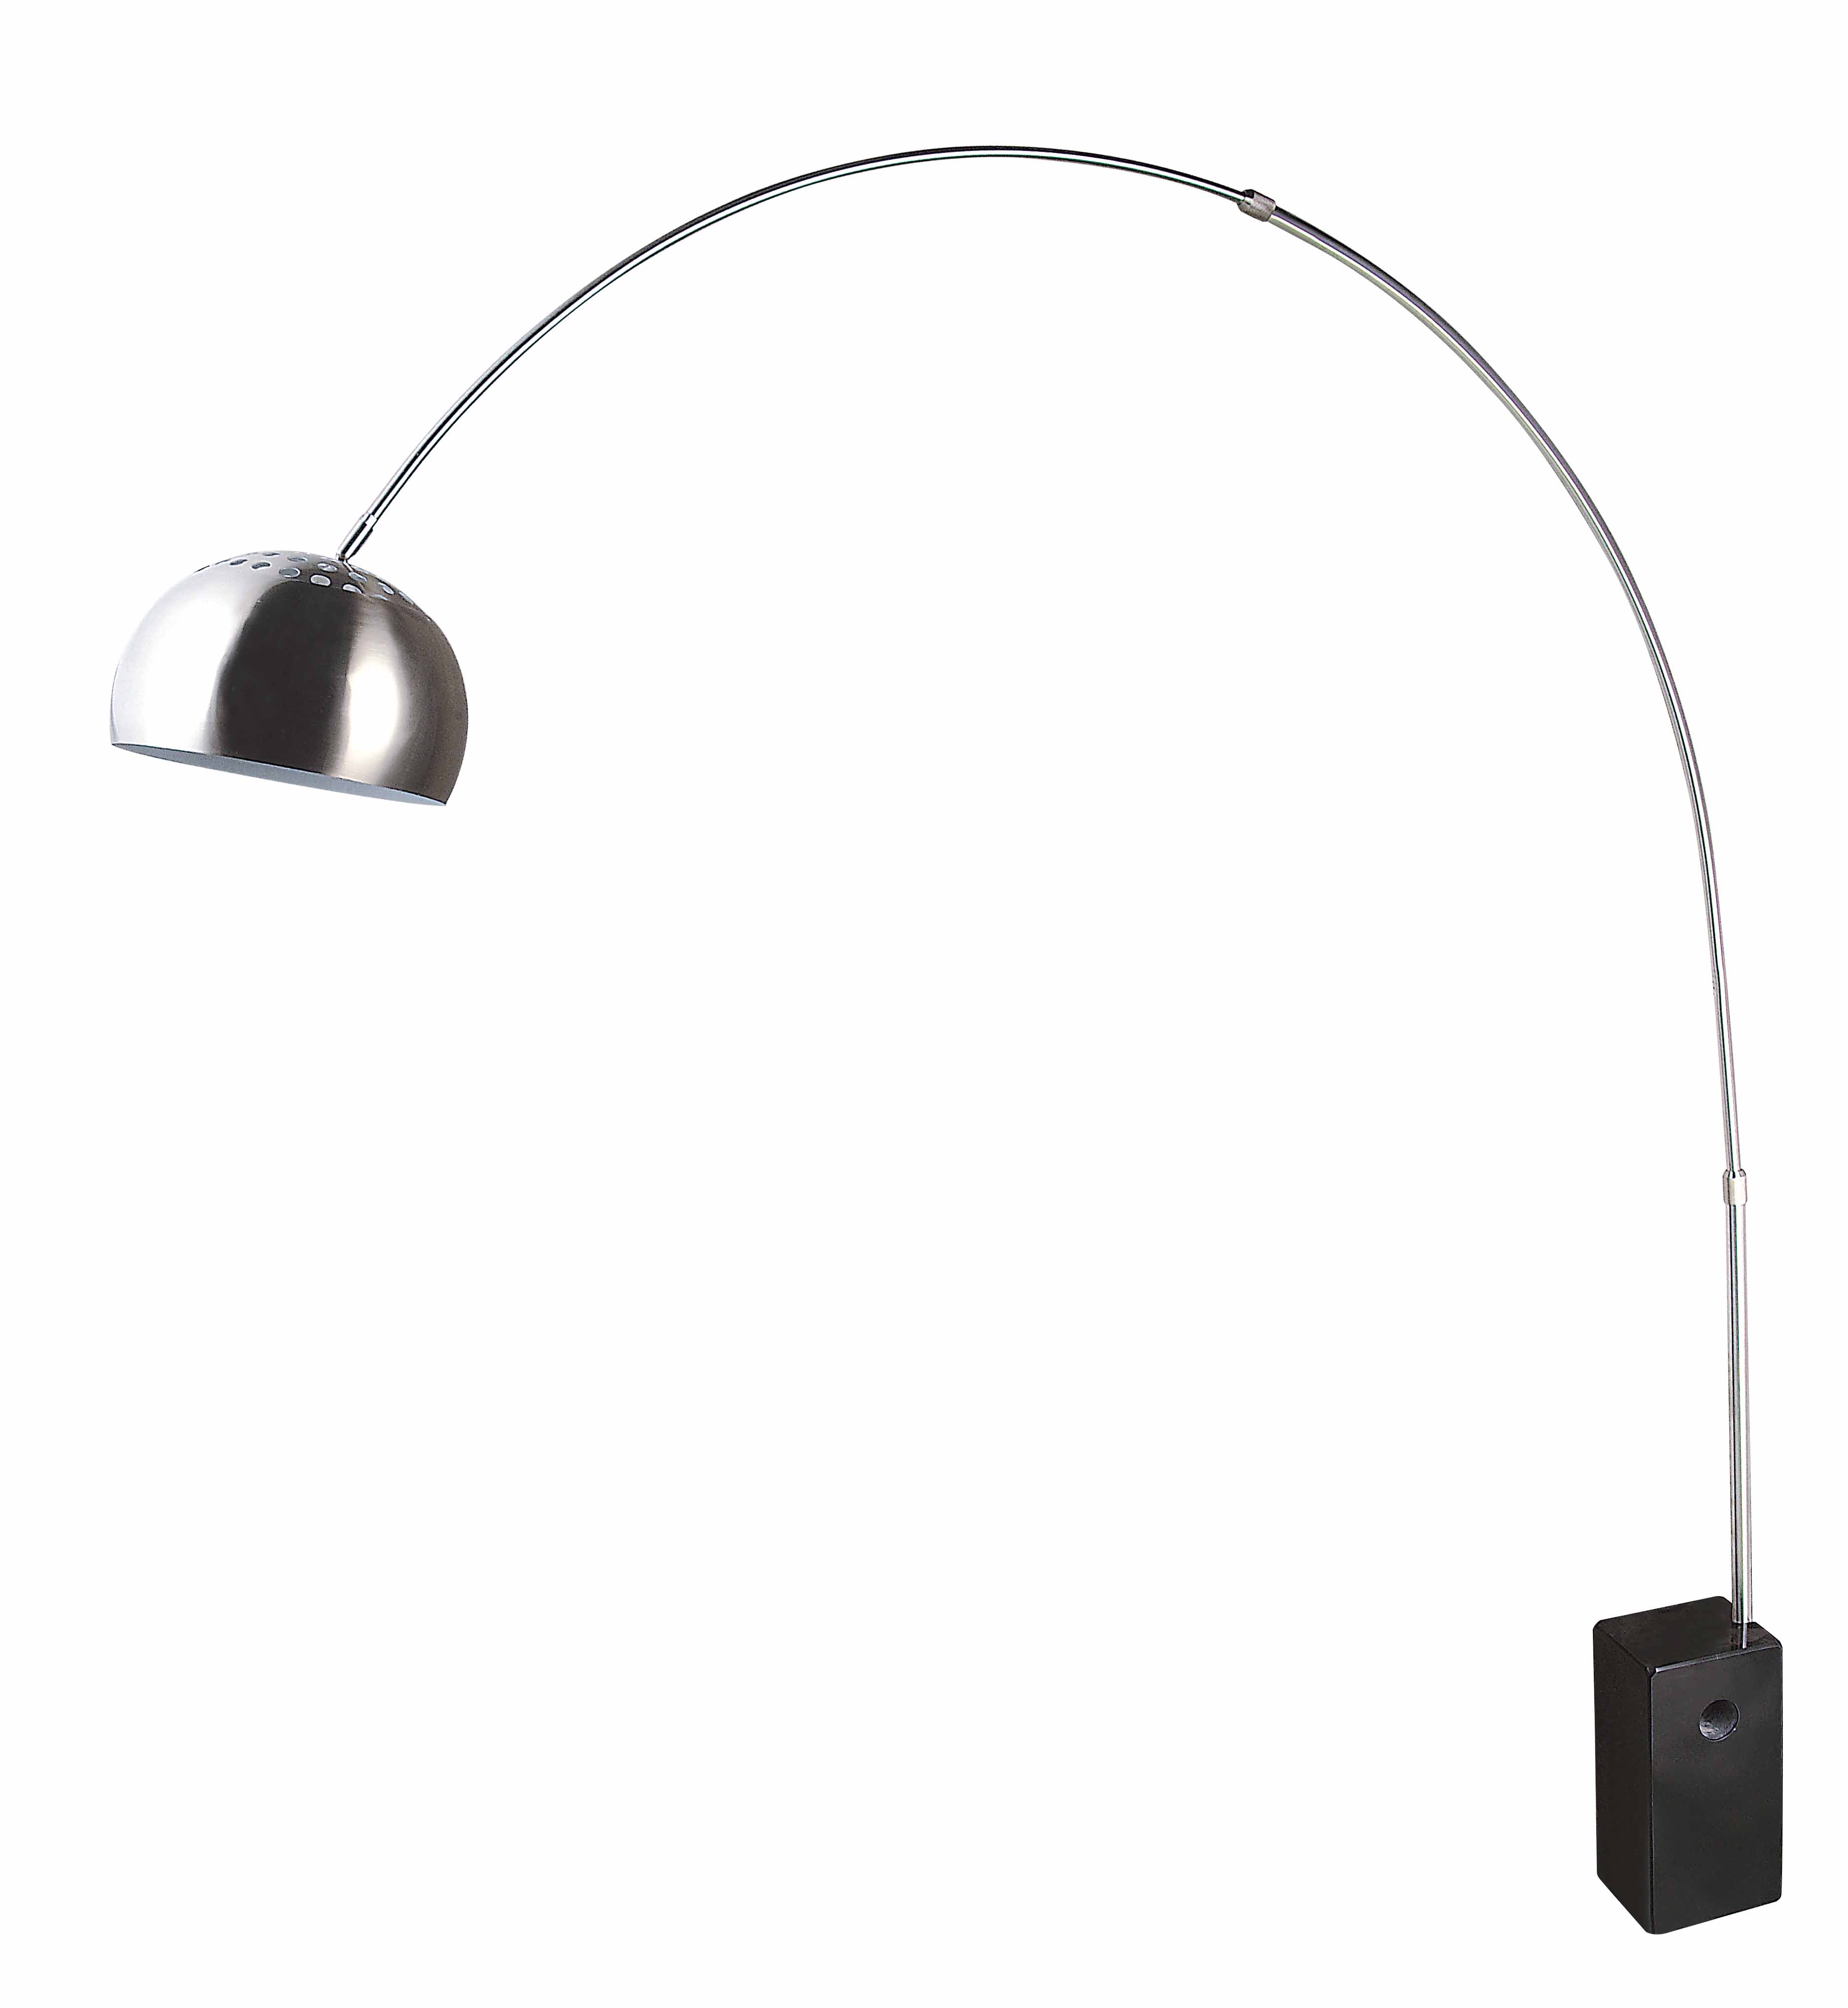 Регулируемый напольный светильник дуги пола дома современного дизайна (375A)